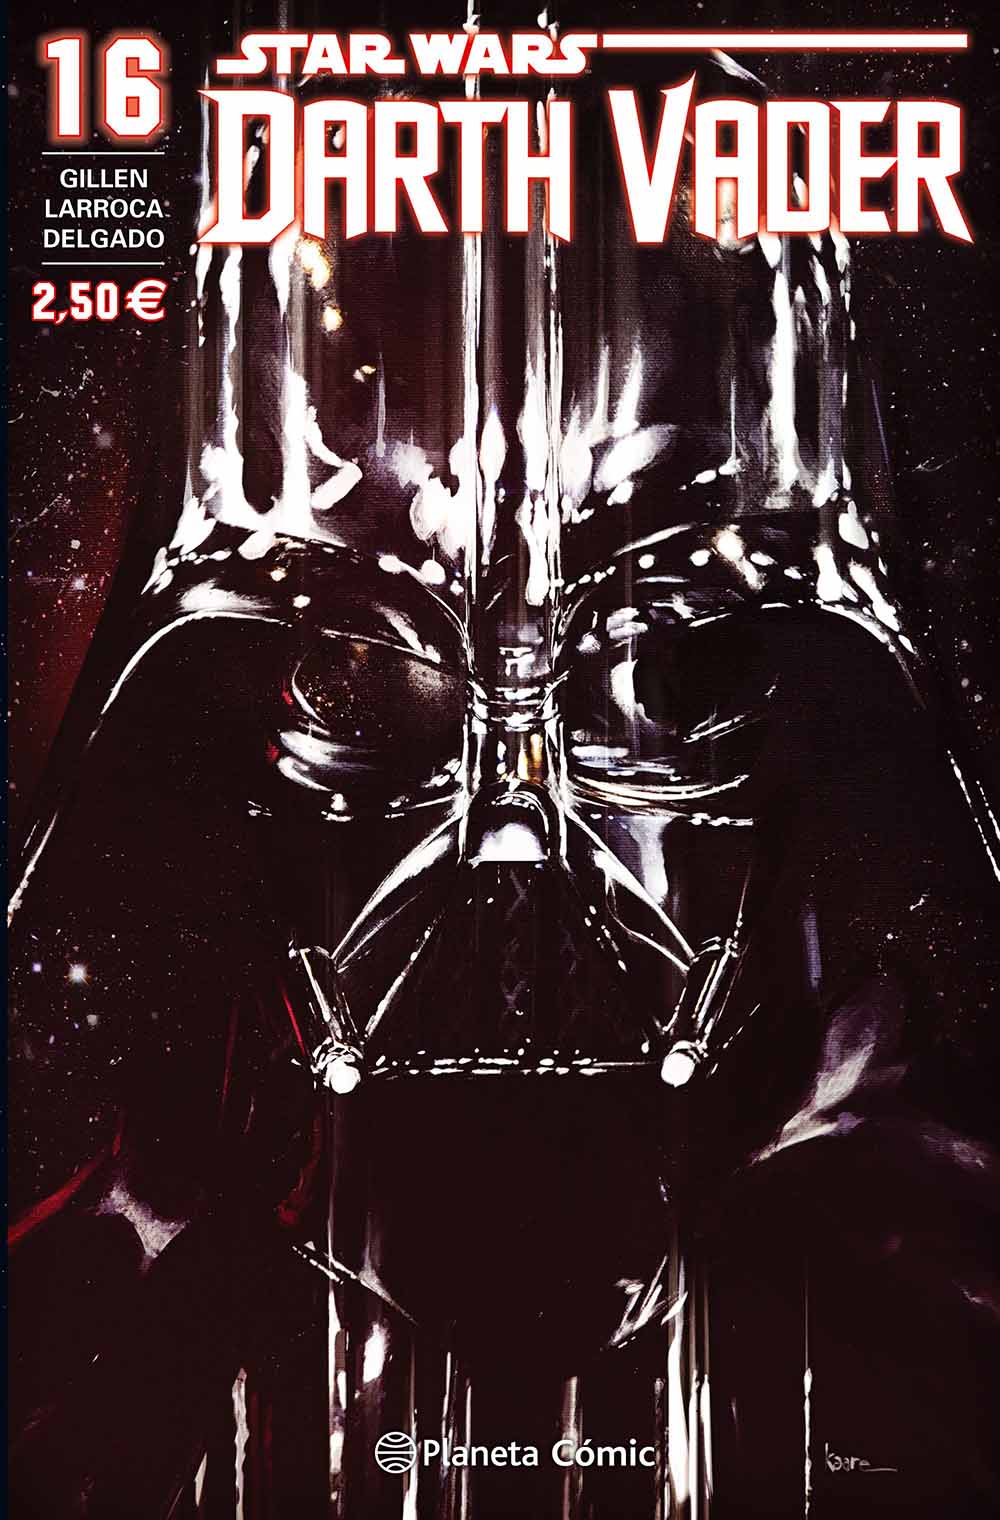 Reseña: “Darth Vader” nº16